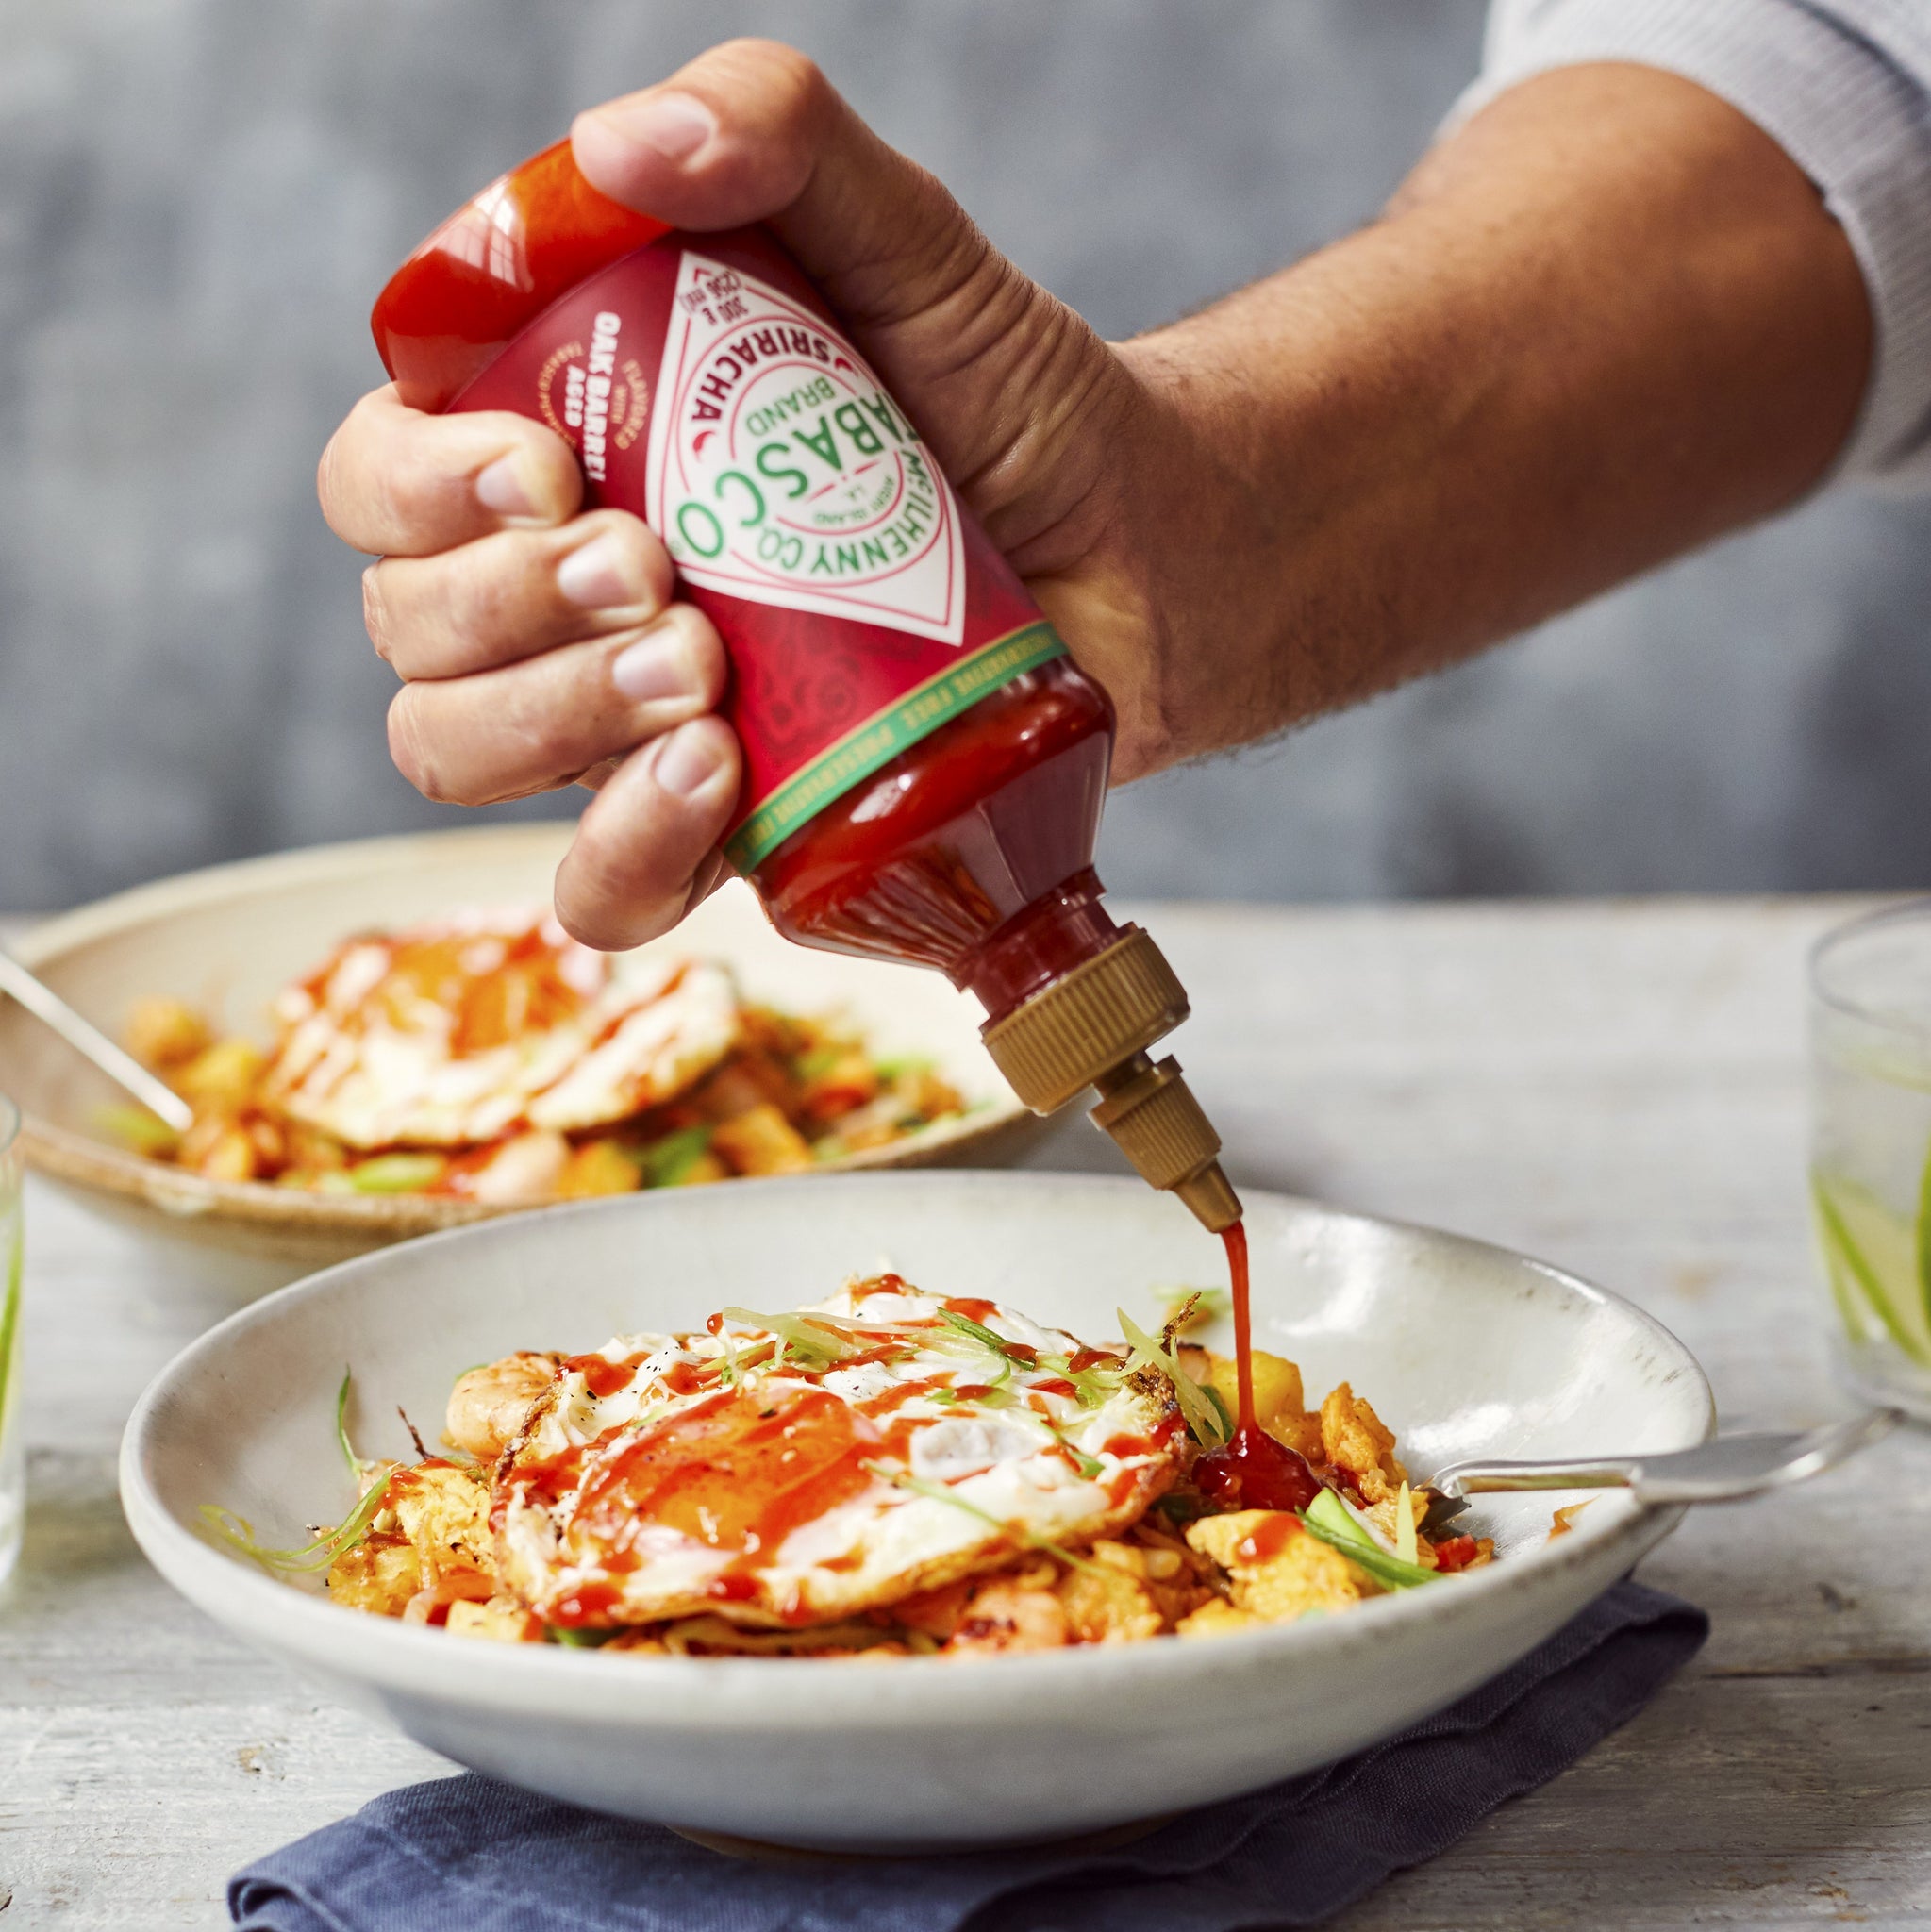 1400 Bouteilles Tabasco Sriracha 100% remboursées - Echantillons gratuits  en Belgique